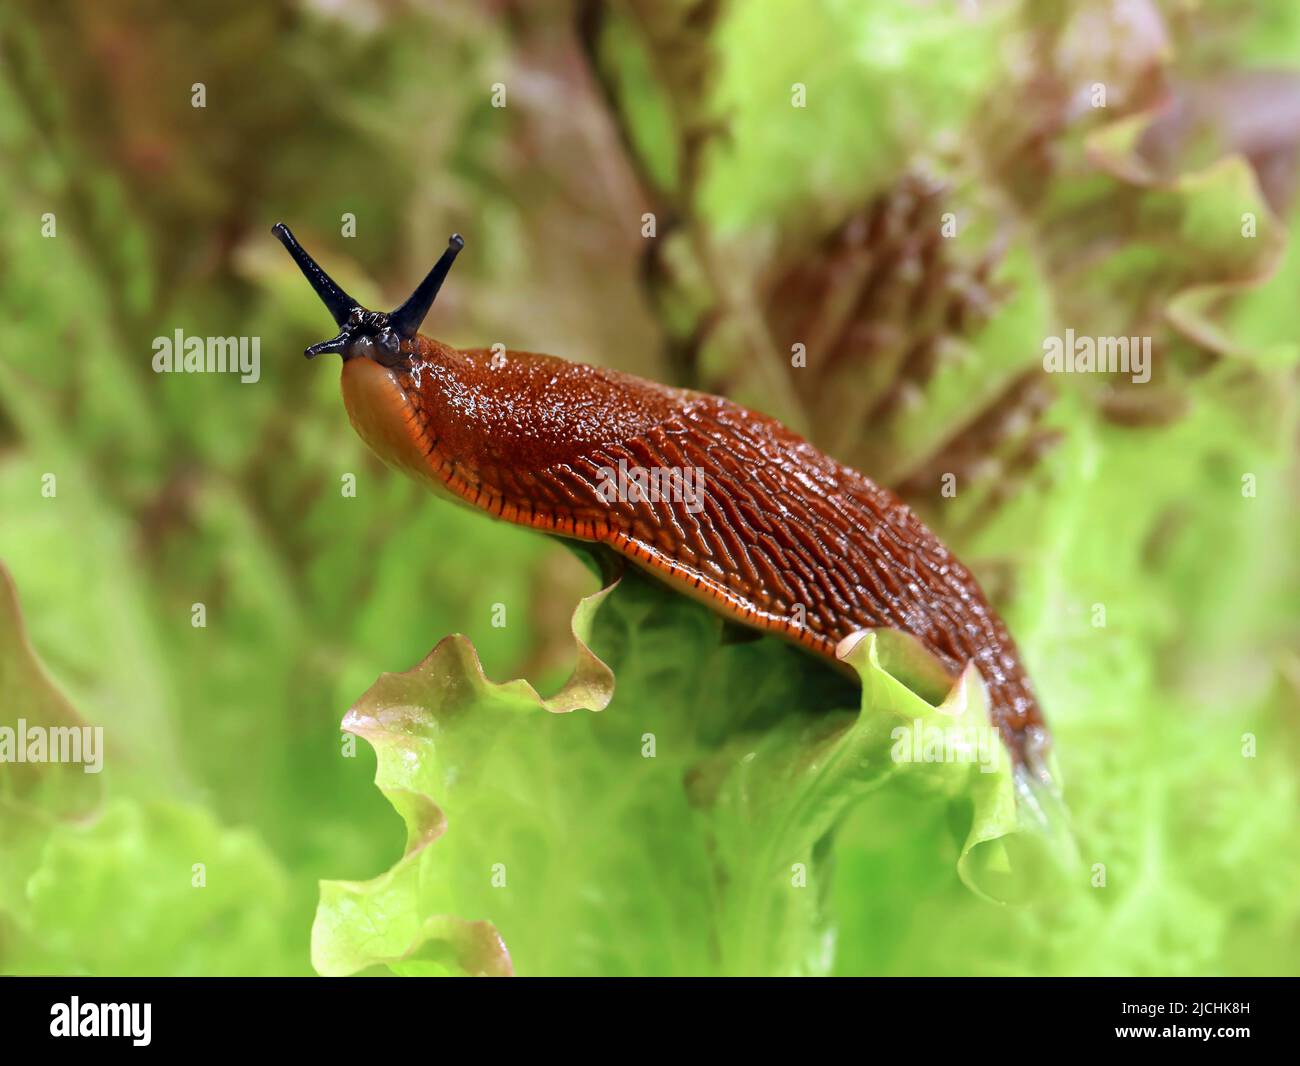 Slug spagnolo, Arion vulgaris, in giardino su una foglia di lattuga, peste di lumaca nel cerotto vegetale Foto Stock